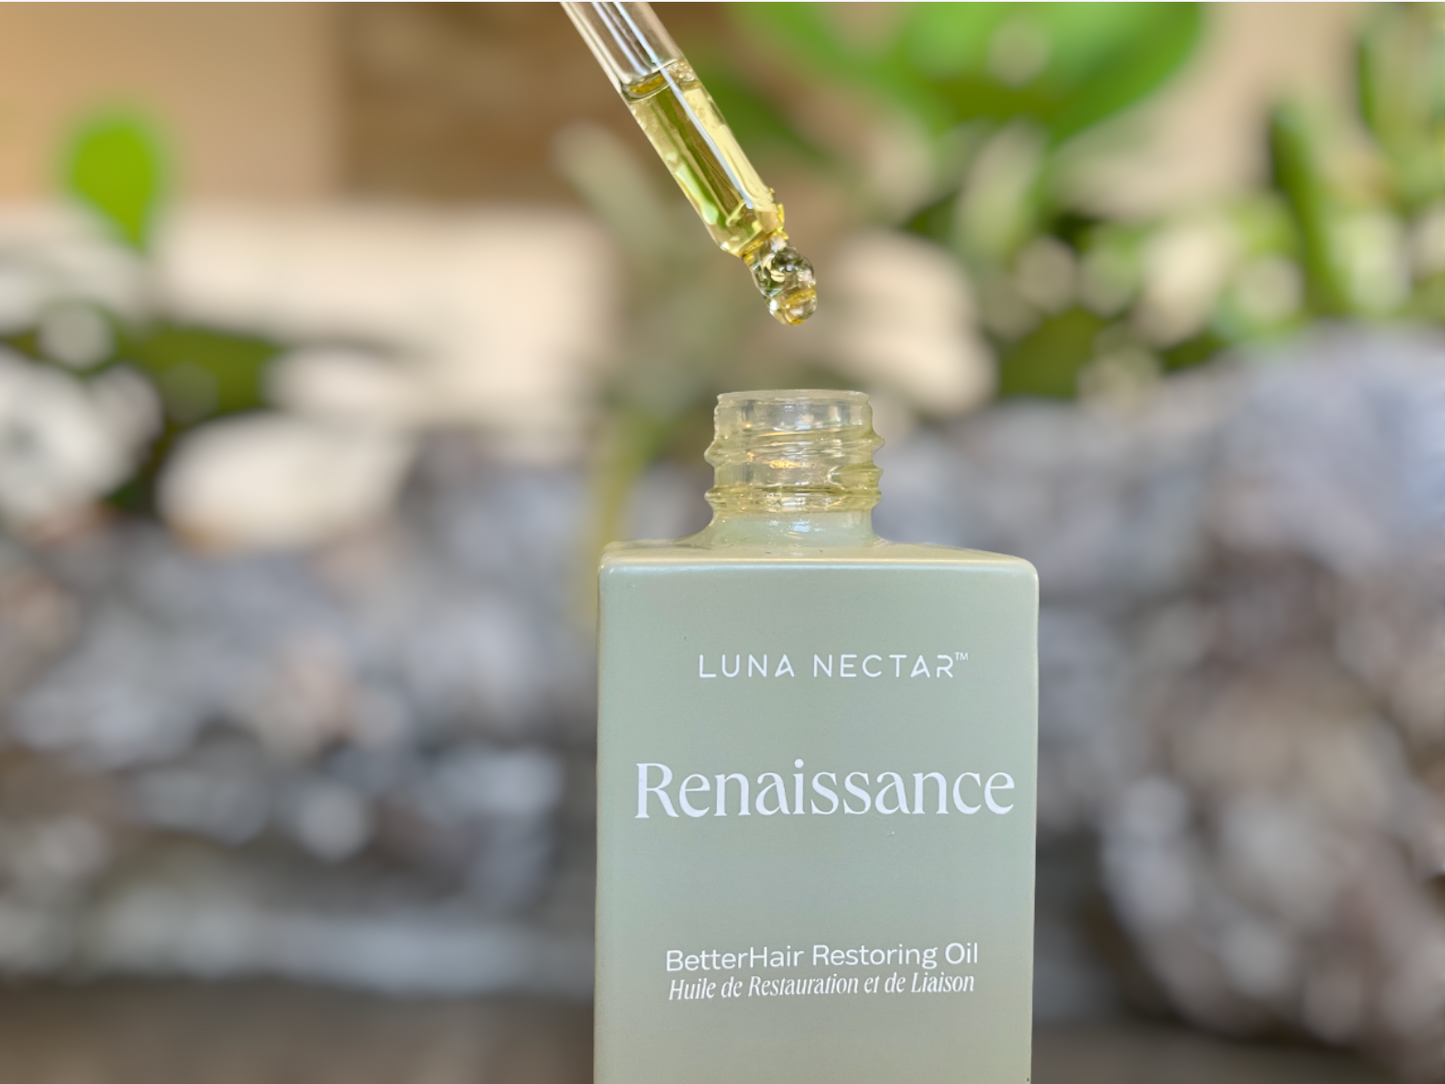 Renaissance BetterHair Restoring Oil for the Art of Hair Oiling